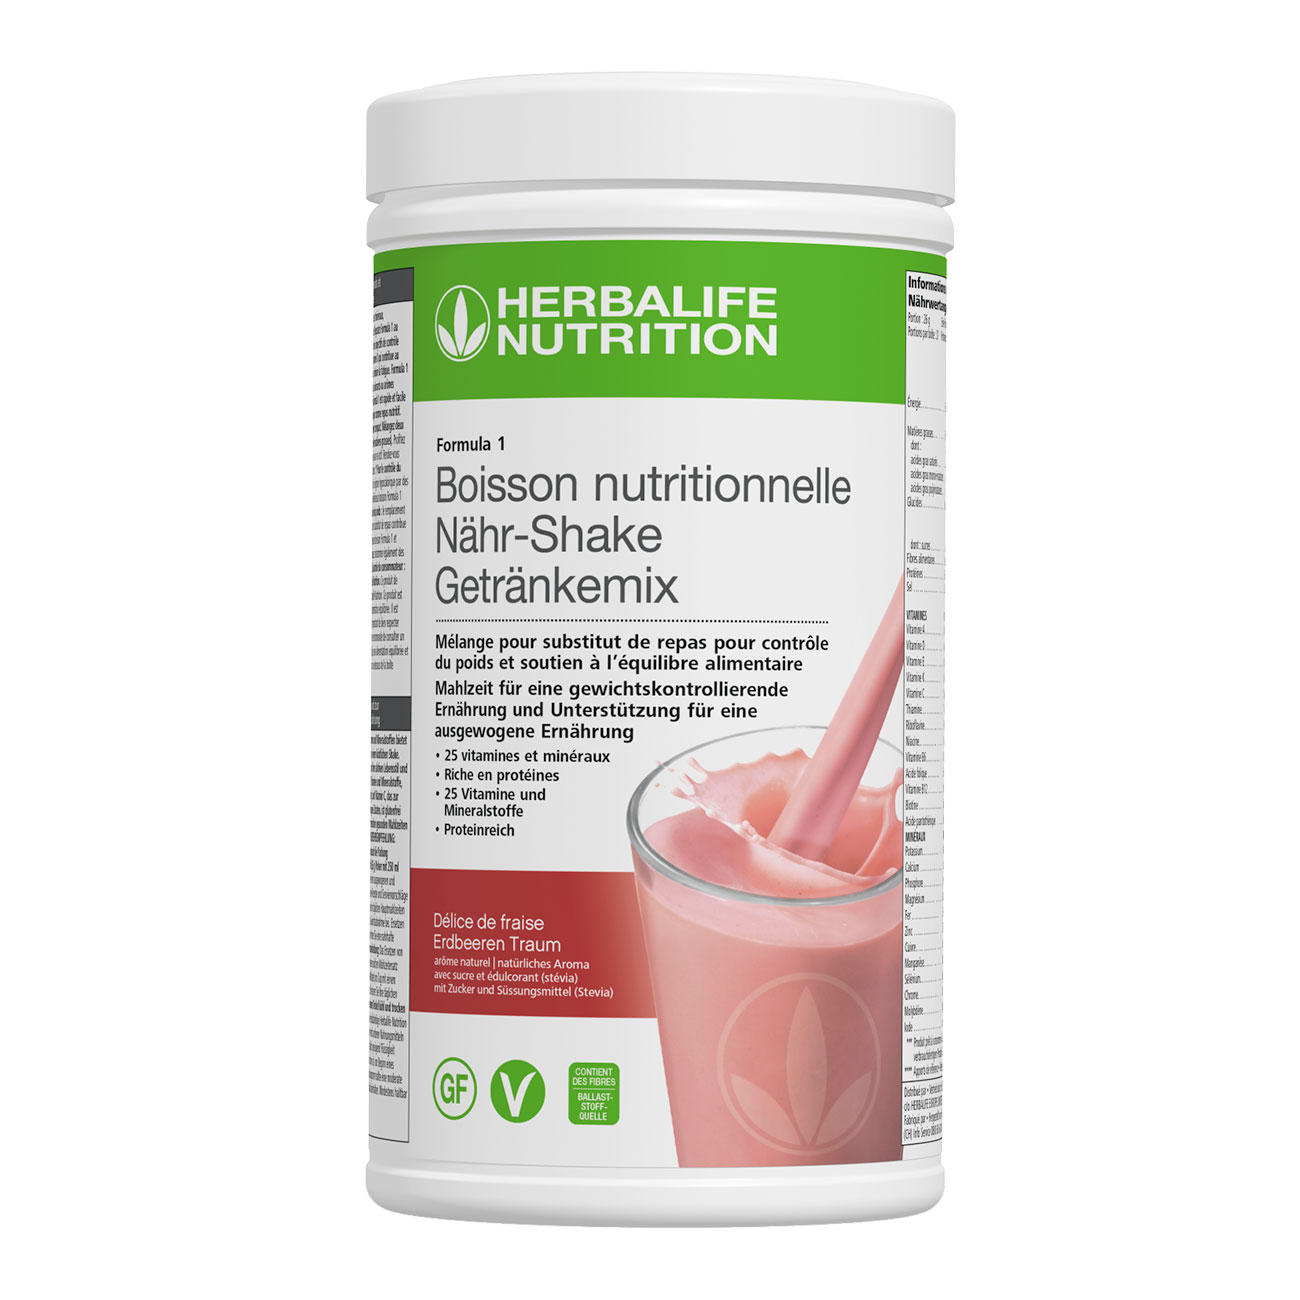 Formula 1 Delice de fraise    un delicieux shake riche en proteines. Ingredients vegan et sans-gluten. Un repas complet.